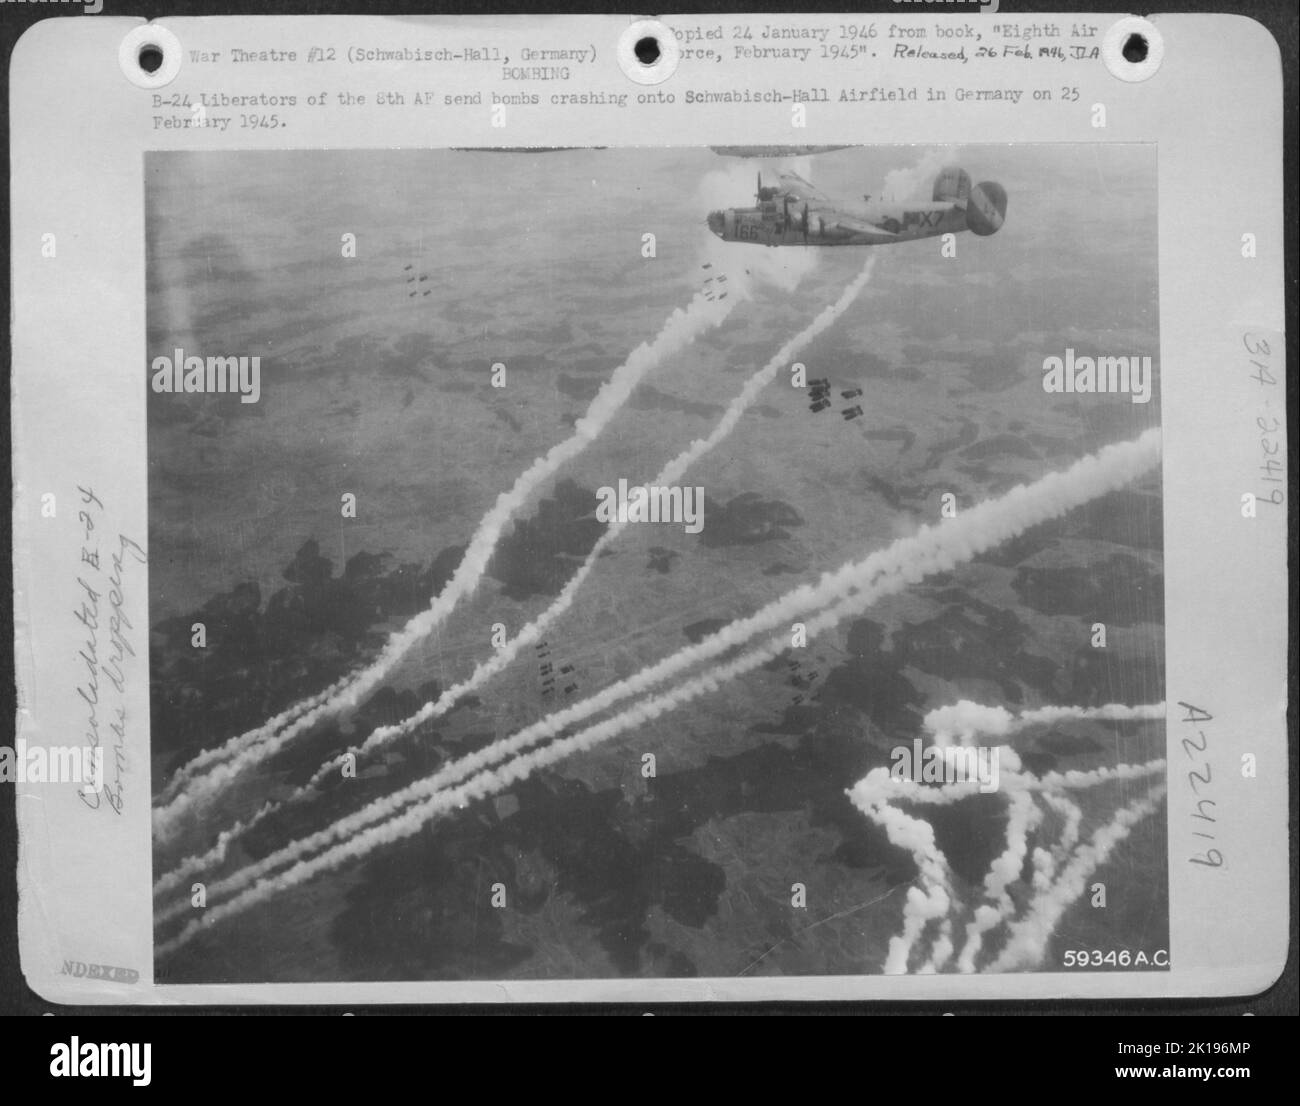 Consolidato B-24 liberatori della forza aerea del 8th inviare bombe che si schiantano sul campo aereo Schwabisch-Hall in Germania il 25 febbraio 1945. Foto Stock